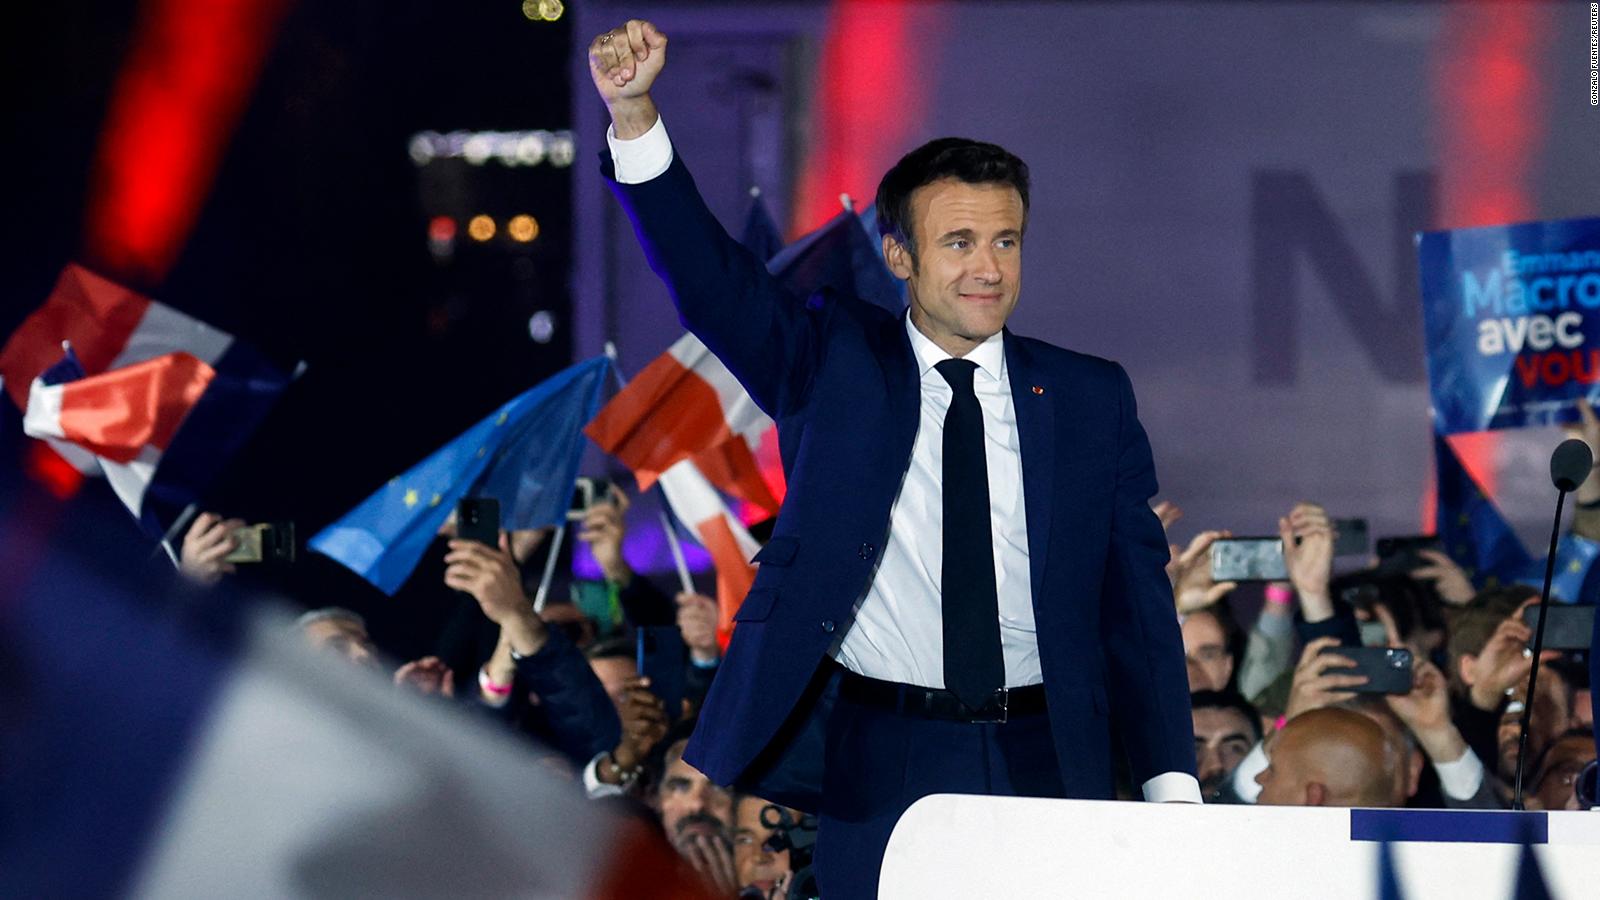 Парламентские выборы во франции. Эммануэль Макрон 2022. Глава Франции сейчас 2022. Макрон выборы 2022.